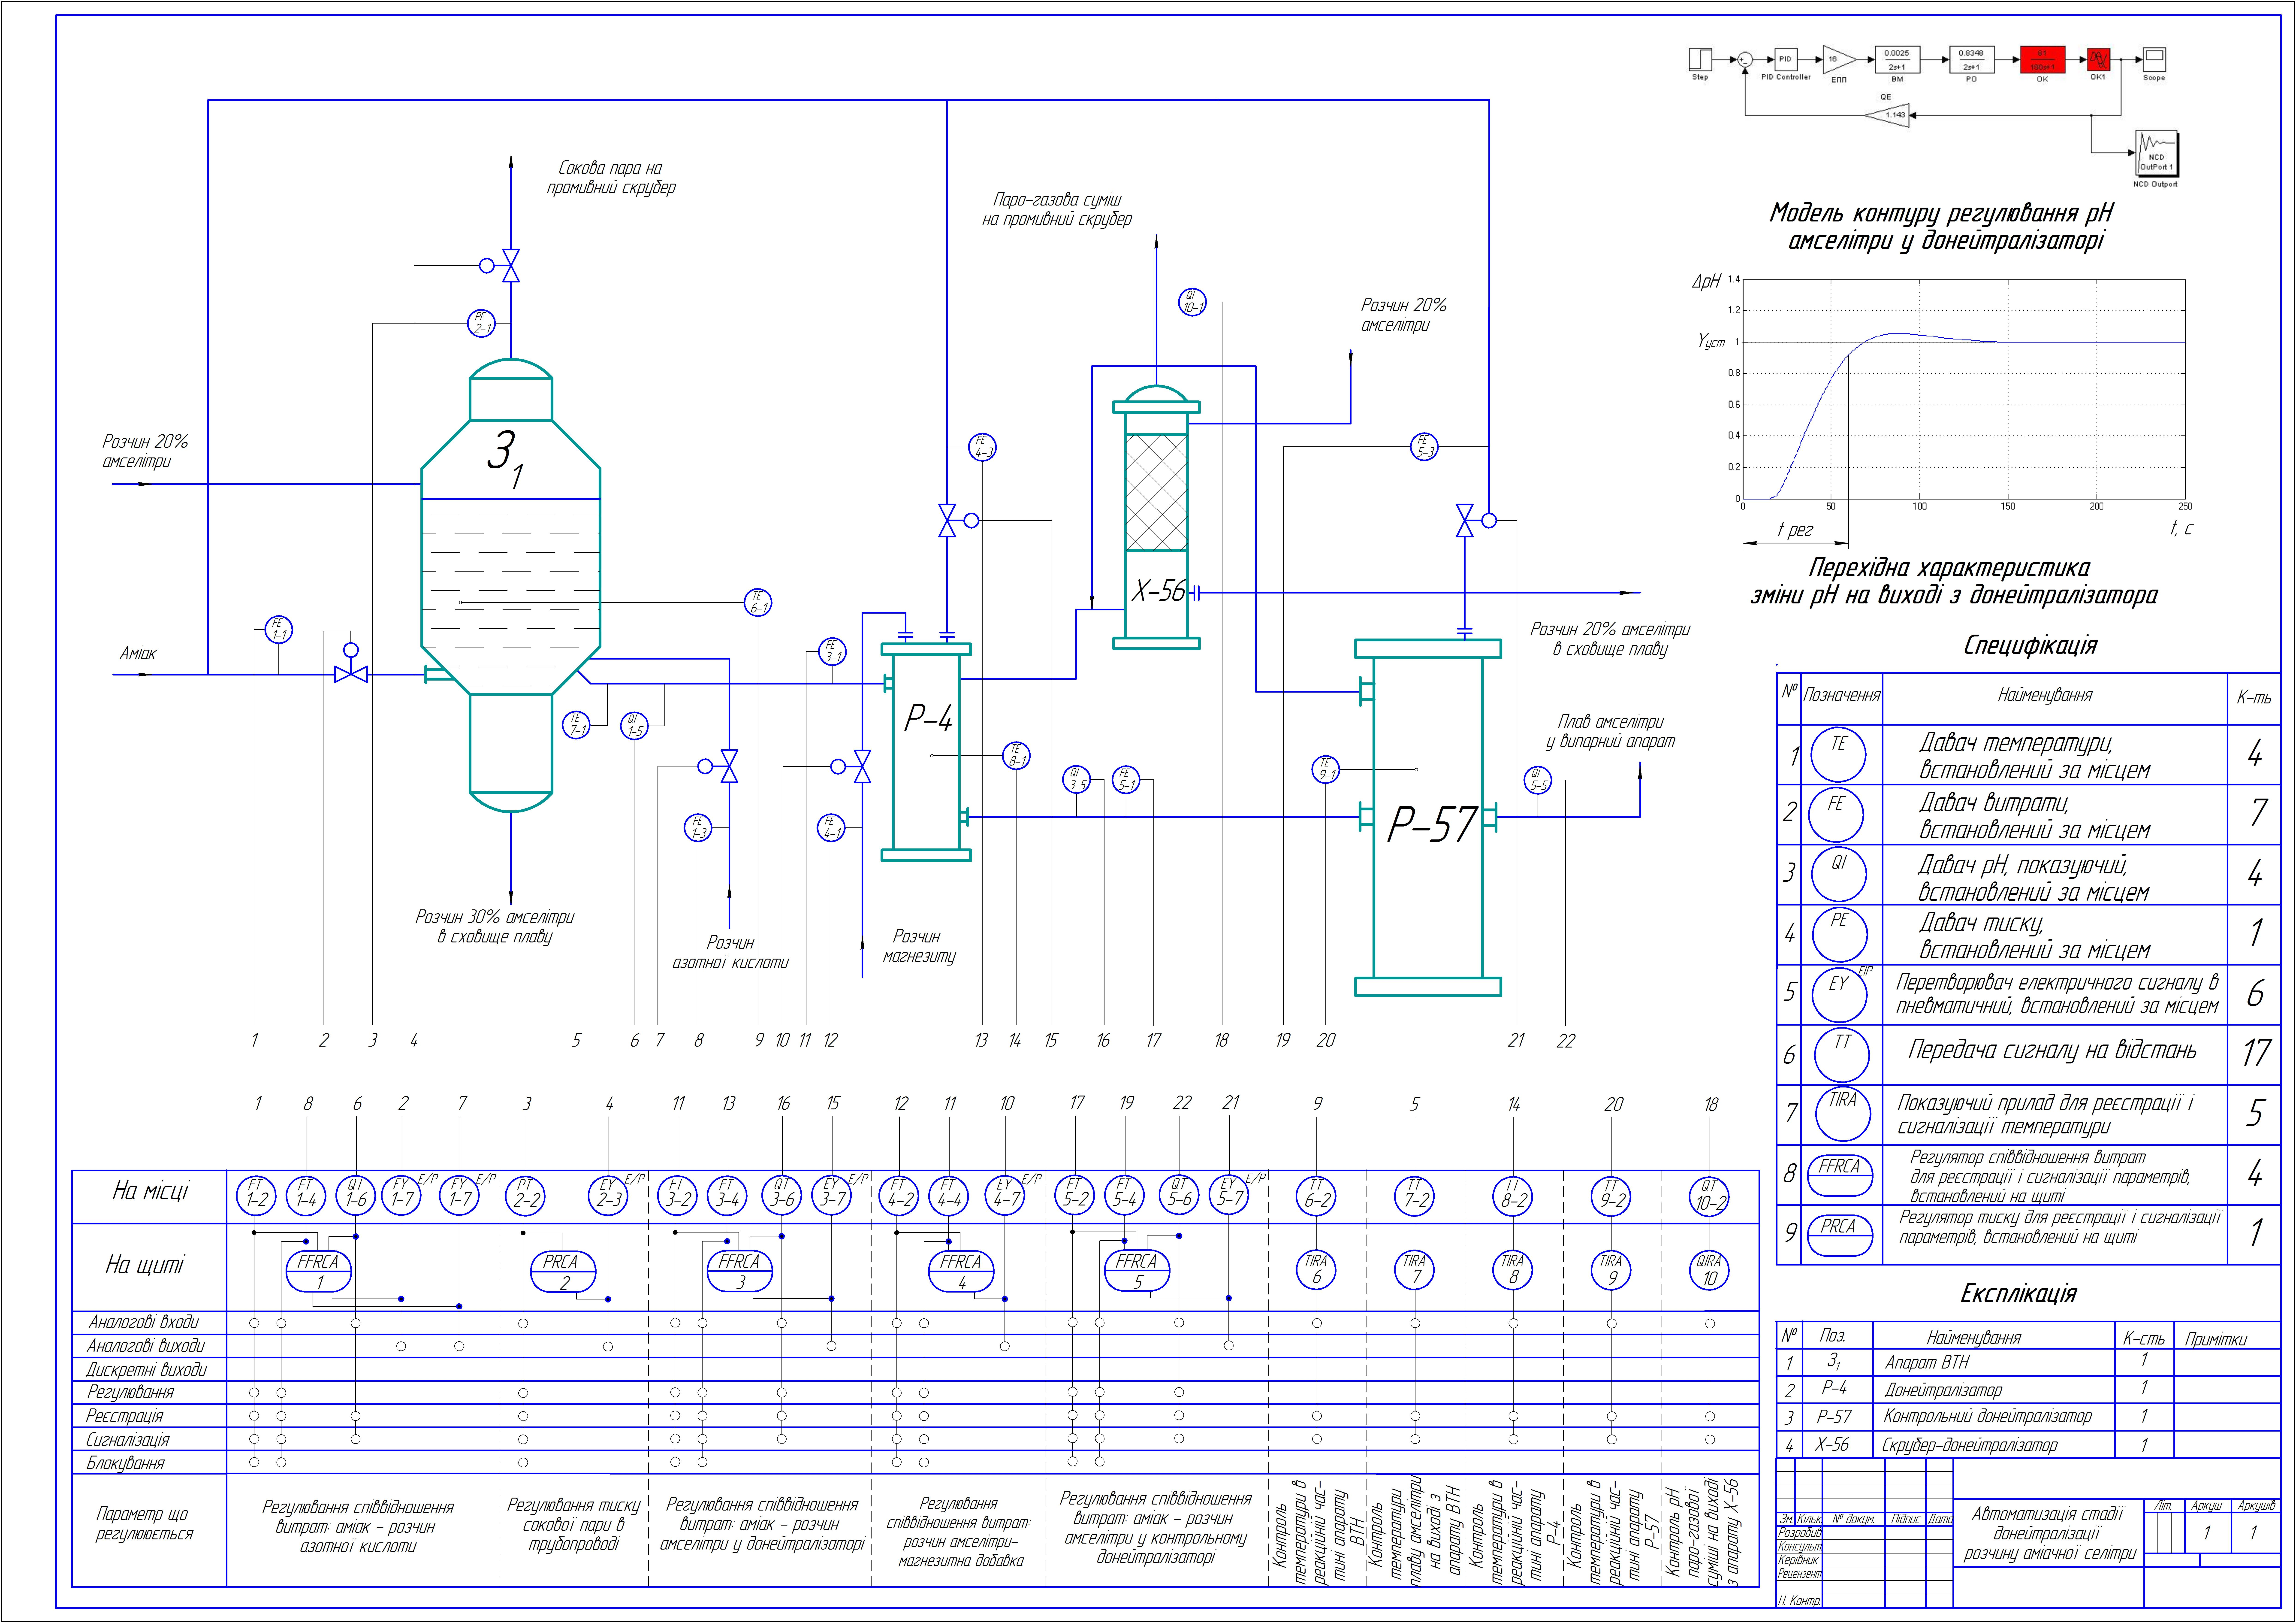 Дипломная работа: Автоматизація процесу очистки води у другому контурі блоку 3 Рівненської АЕС